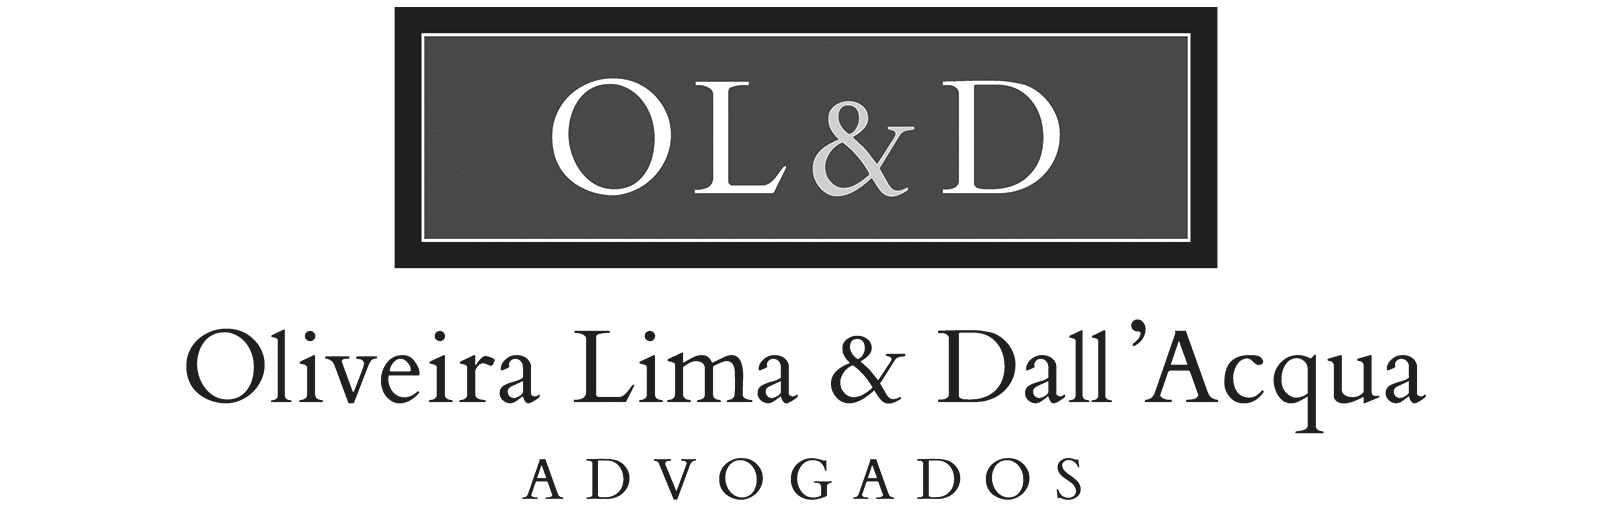 Marketing Jurídico - Oliveira Lima